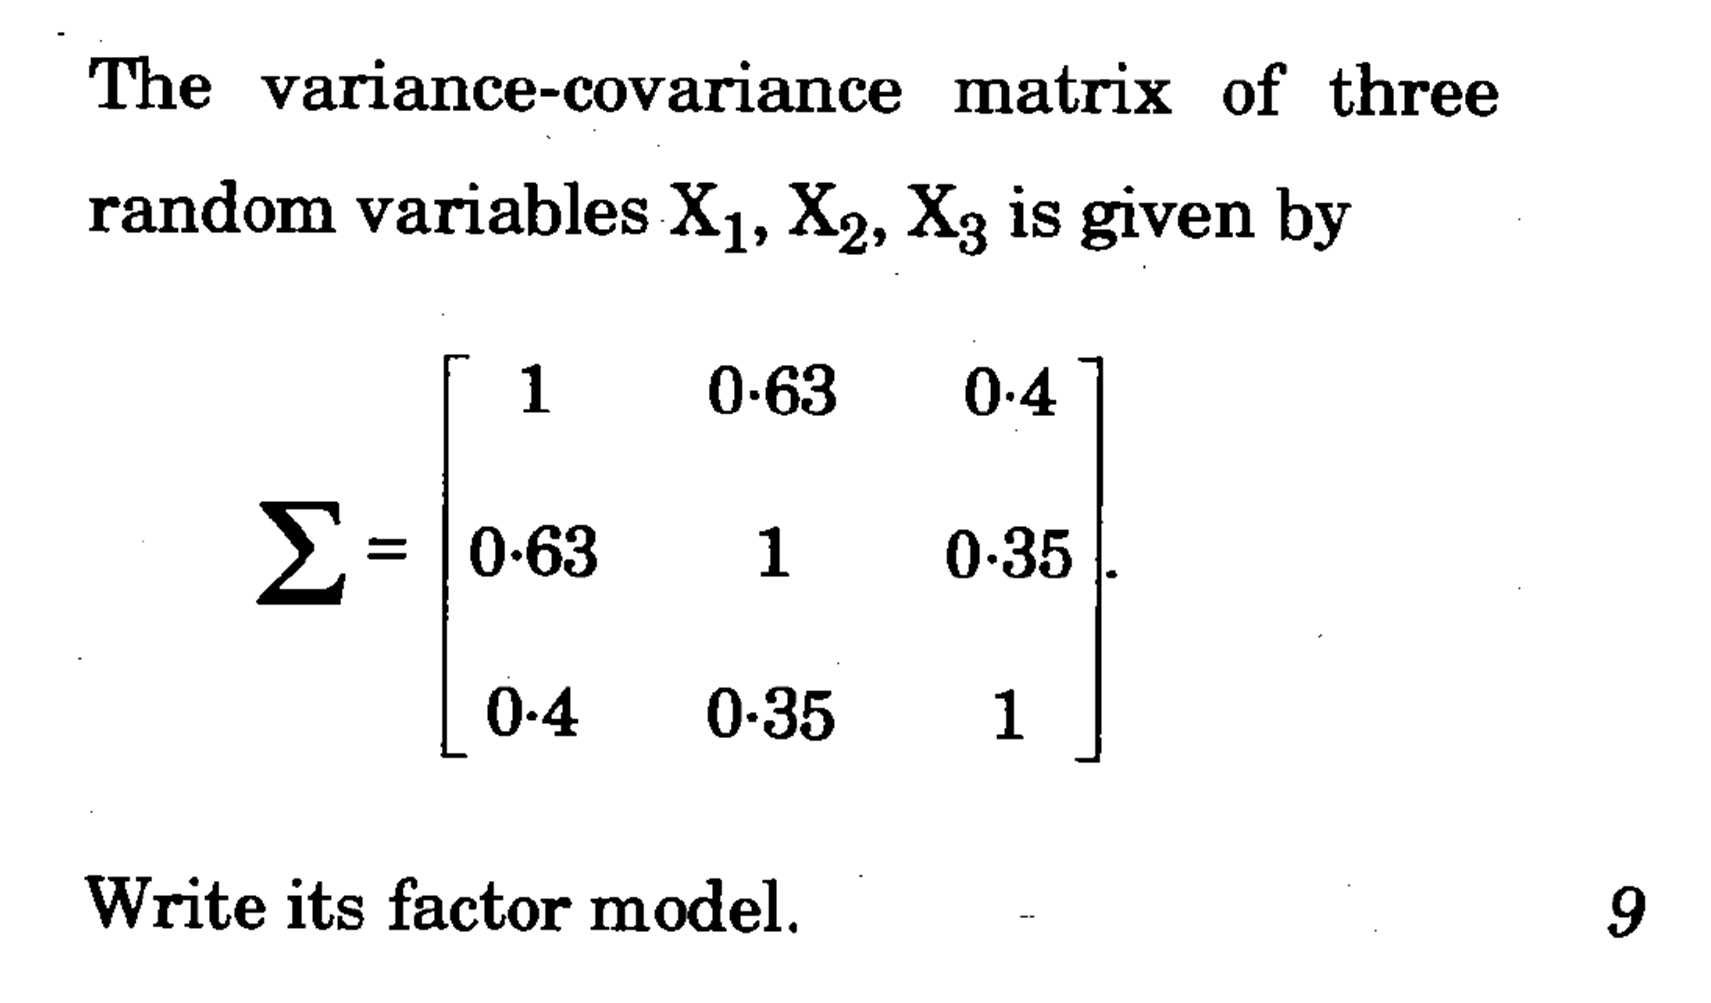 find covariance matrix for 2 vectors matlab